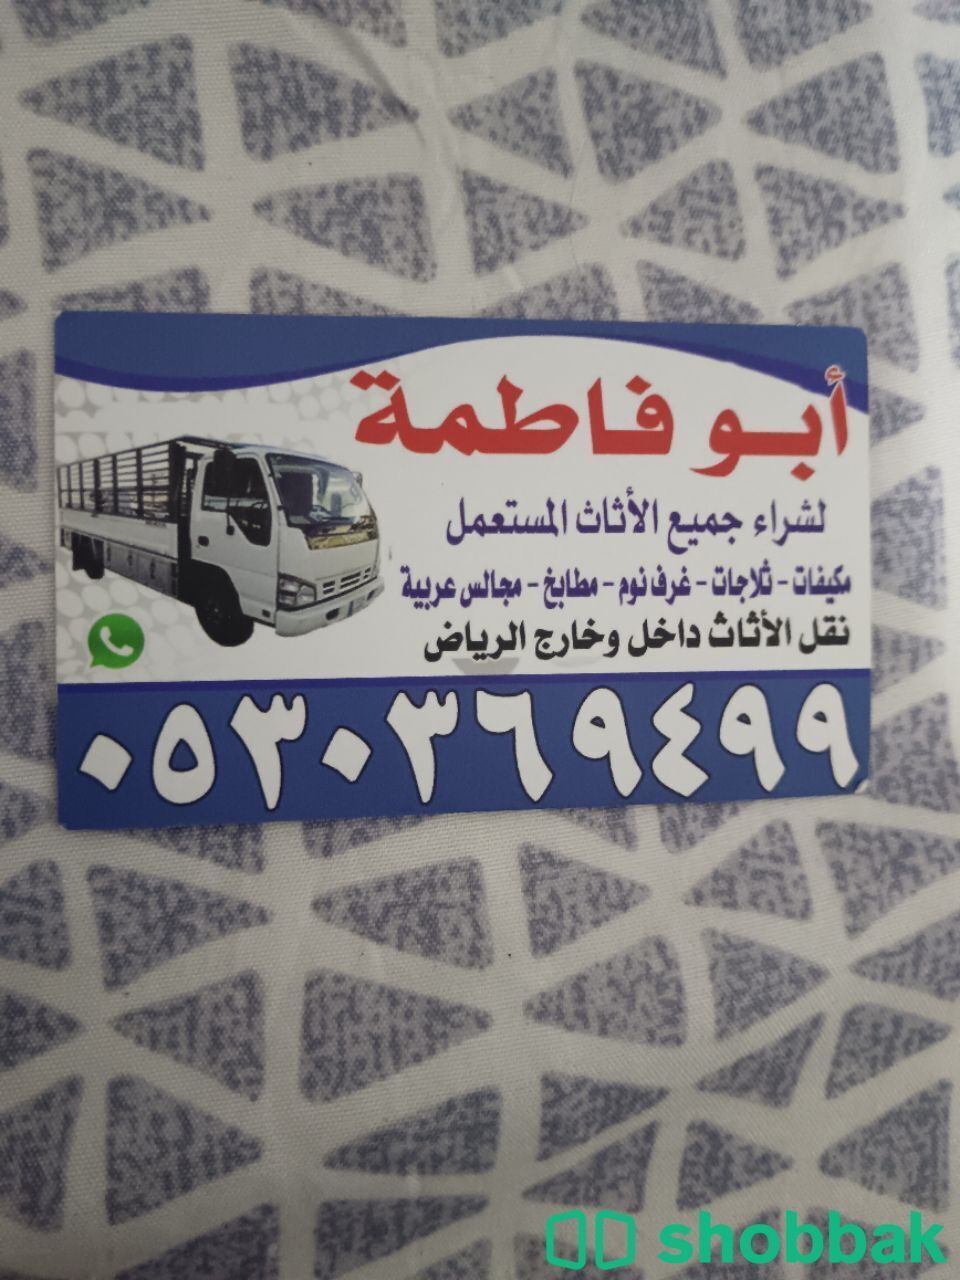 شراء أثاث مستعمل حي الخزامى 0530369499  Shobbak Saudi Arabia